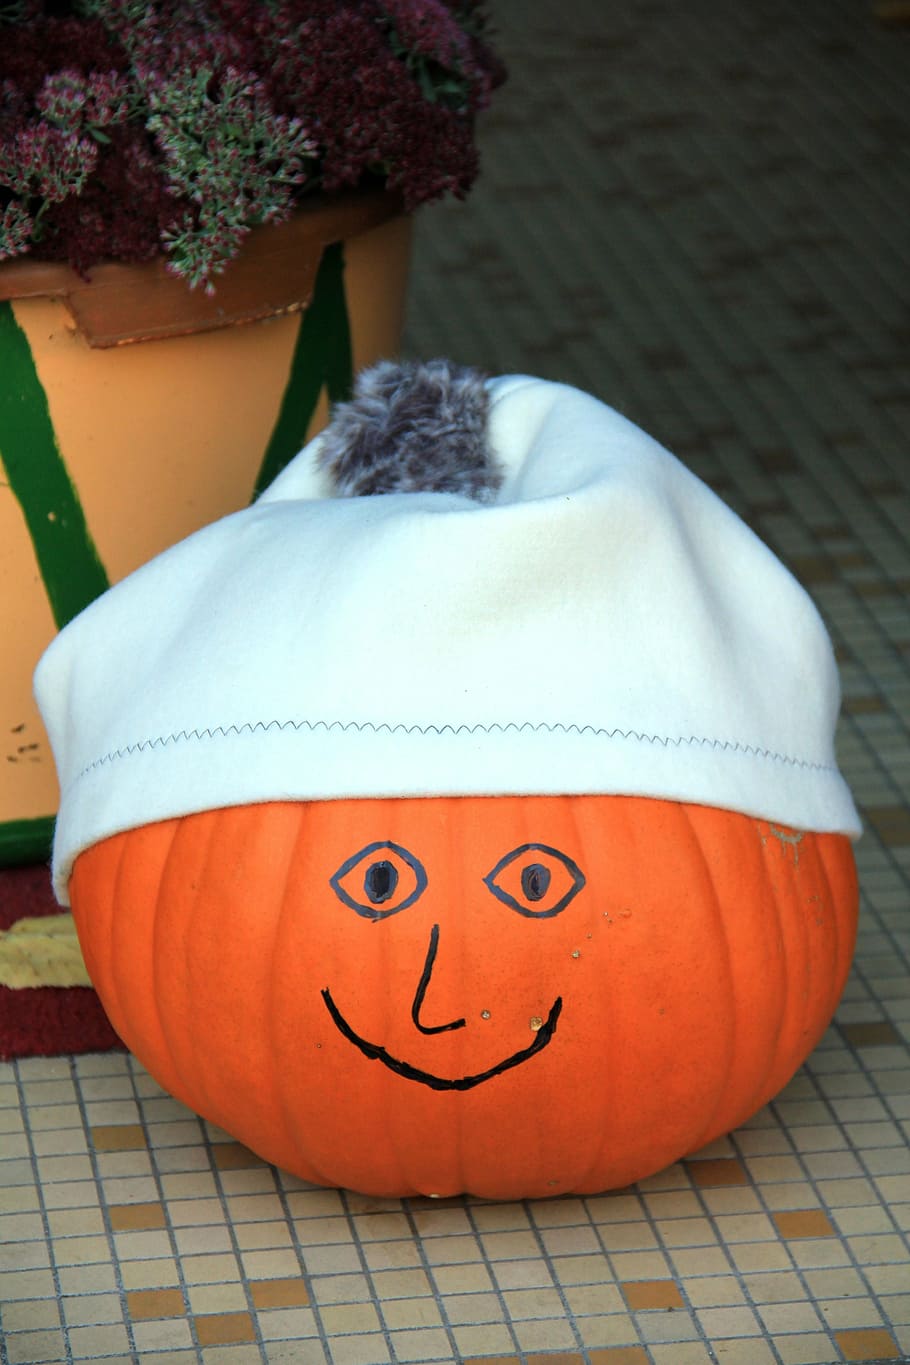 autumn, pumpkin, face, orange, cap, smile, laugh, bobble hat, joy, funny